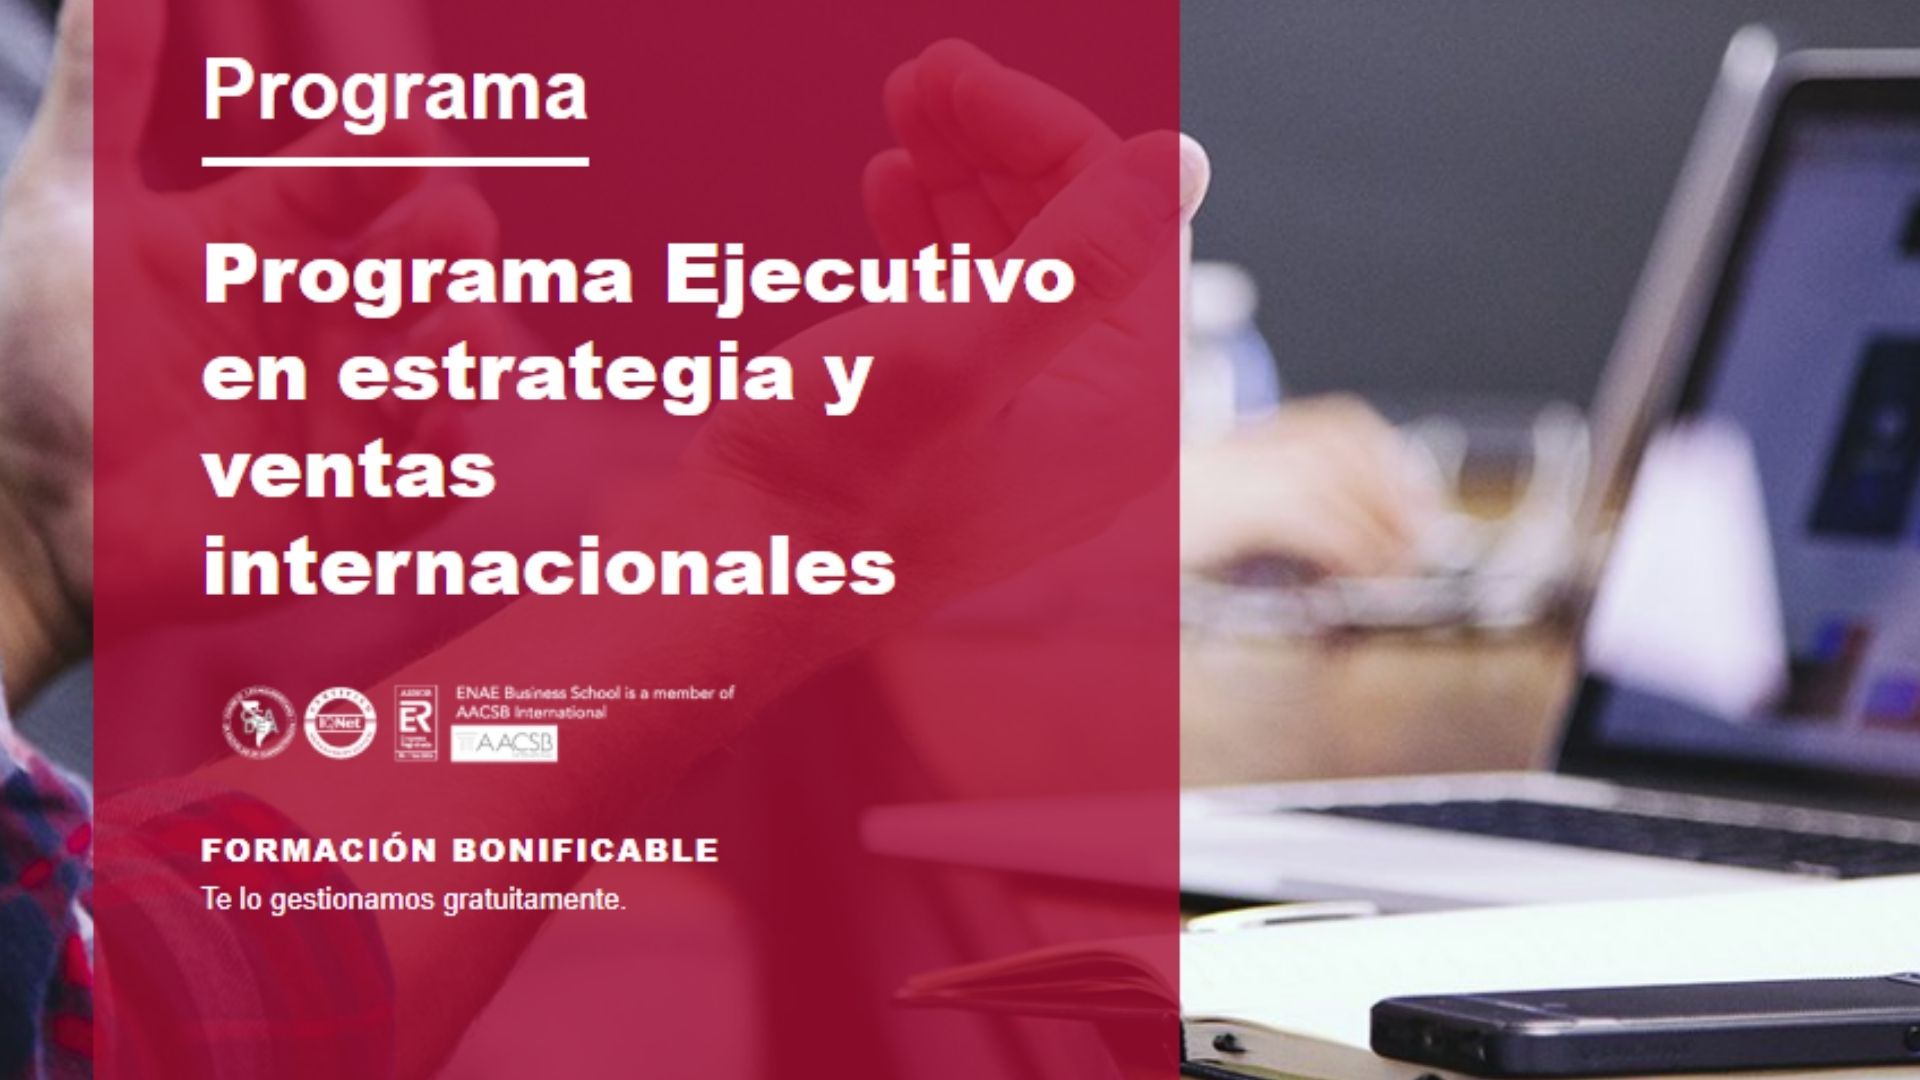 Programa Ejecutivo | Estrategia y ventas Internacionales | Cámara de Comercio de Murcia